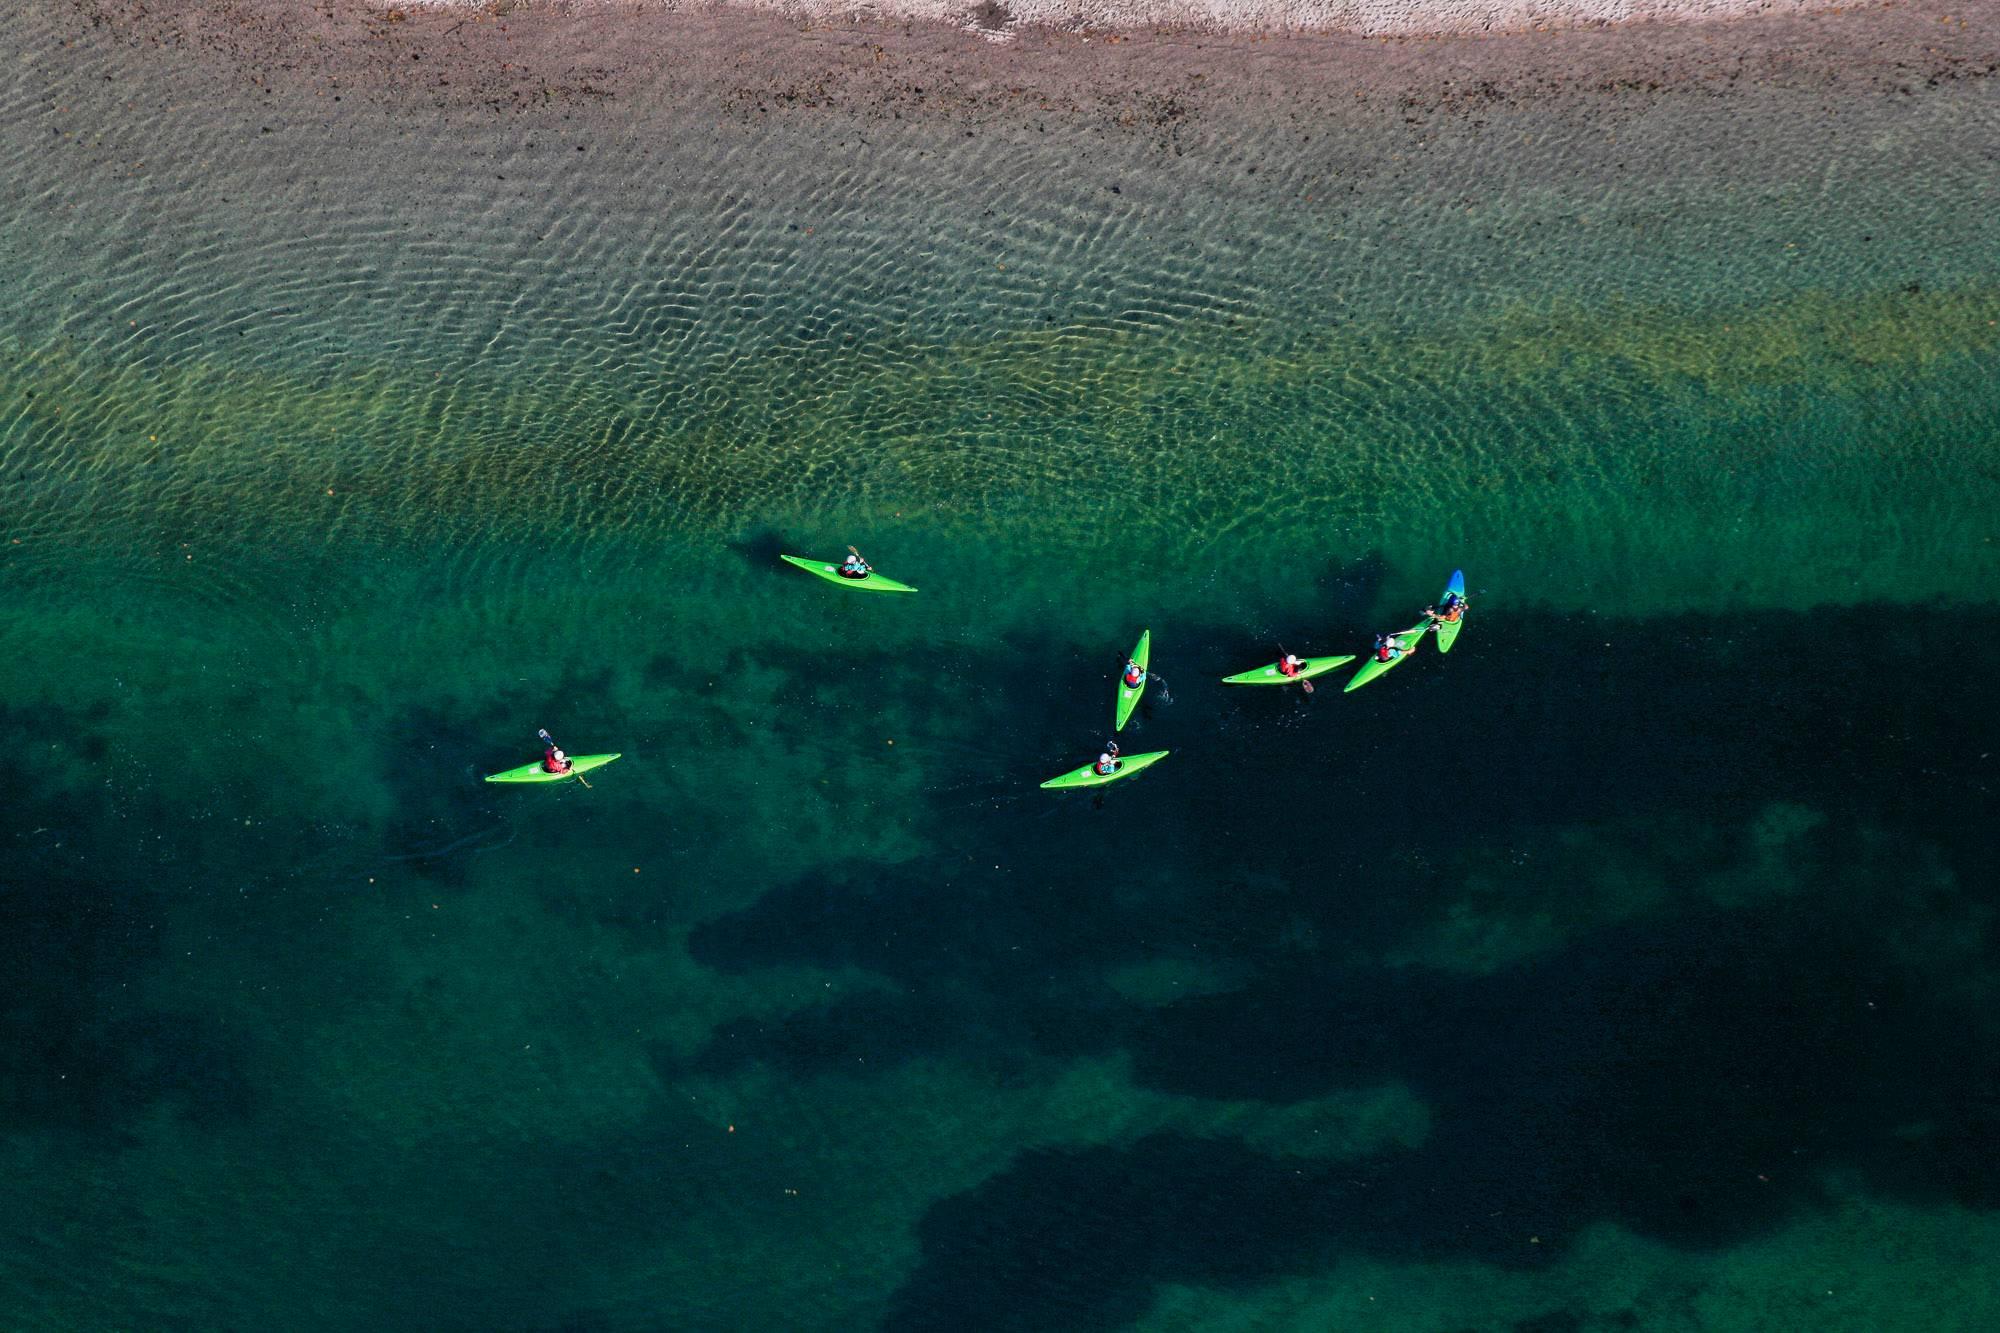 Green kayaks